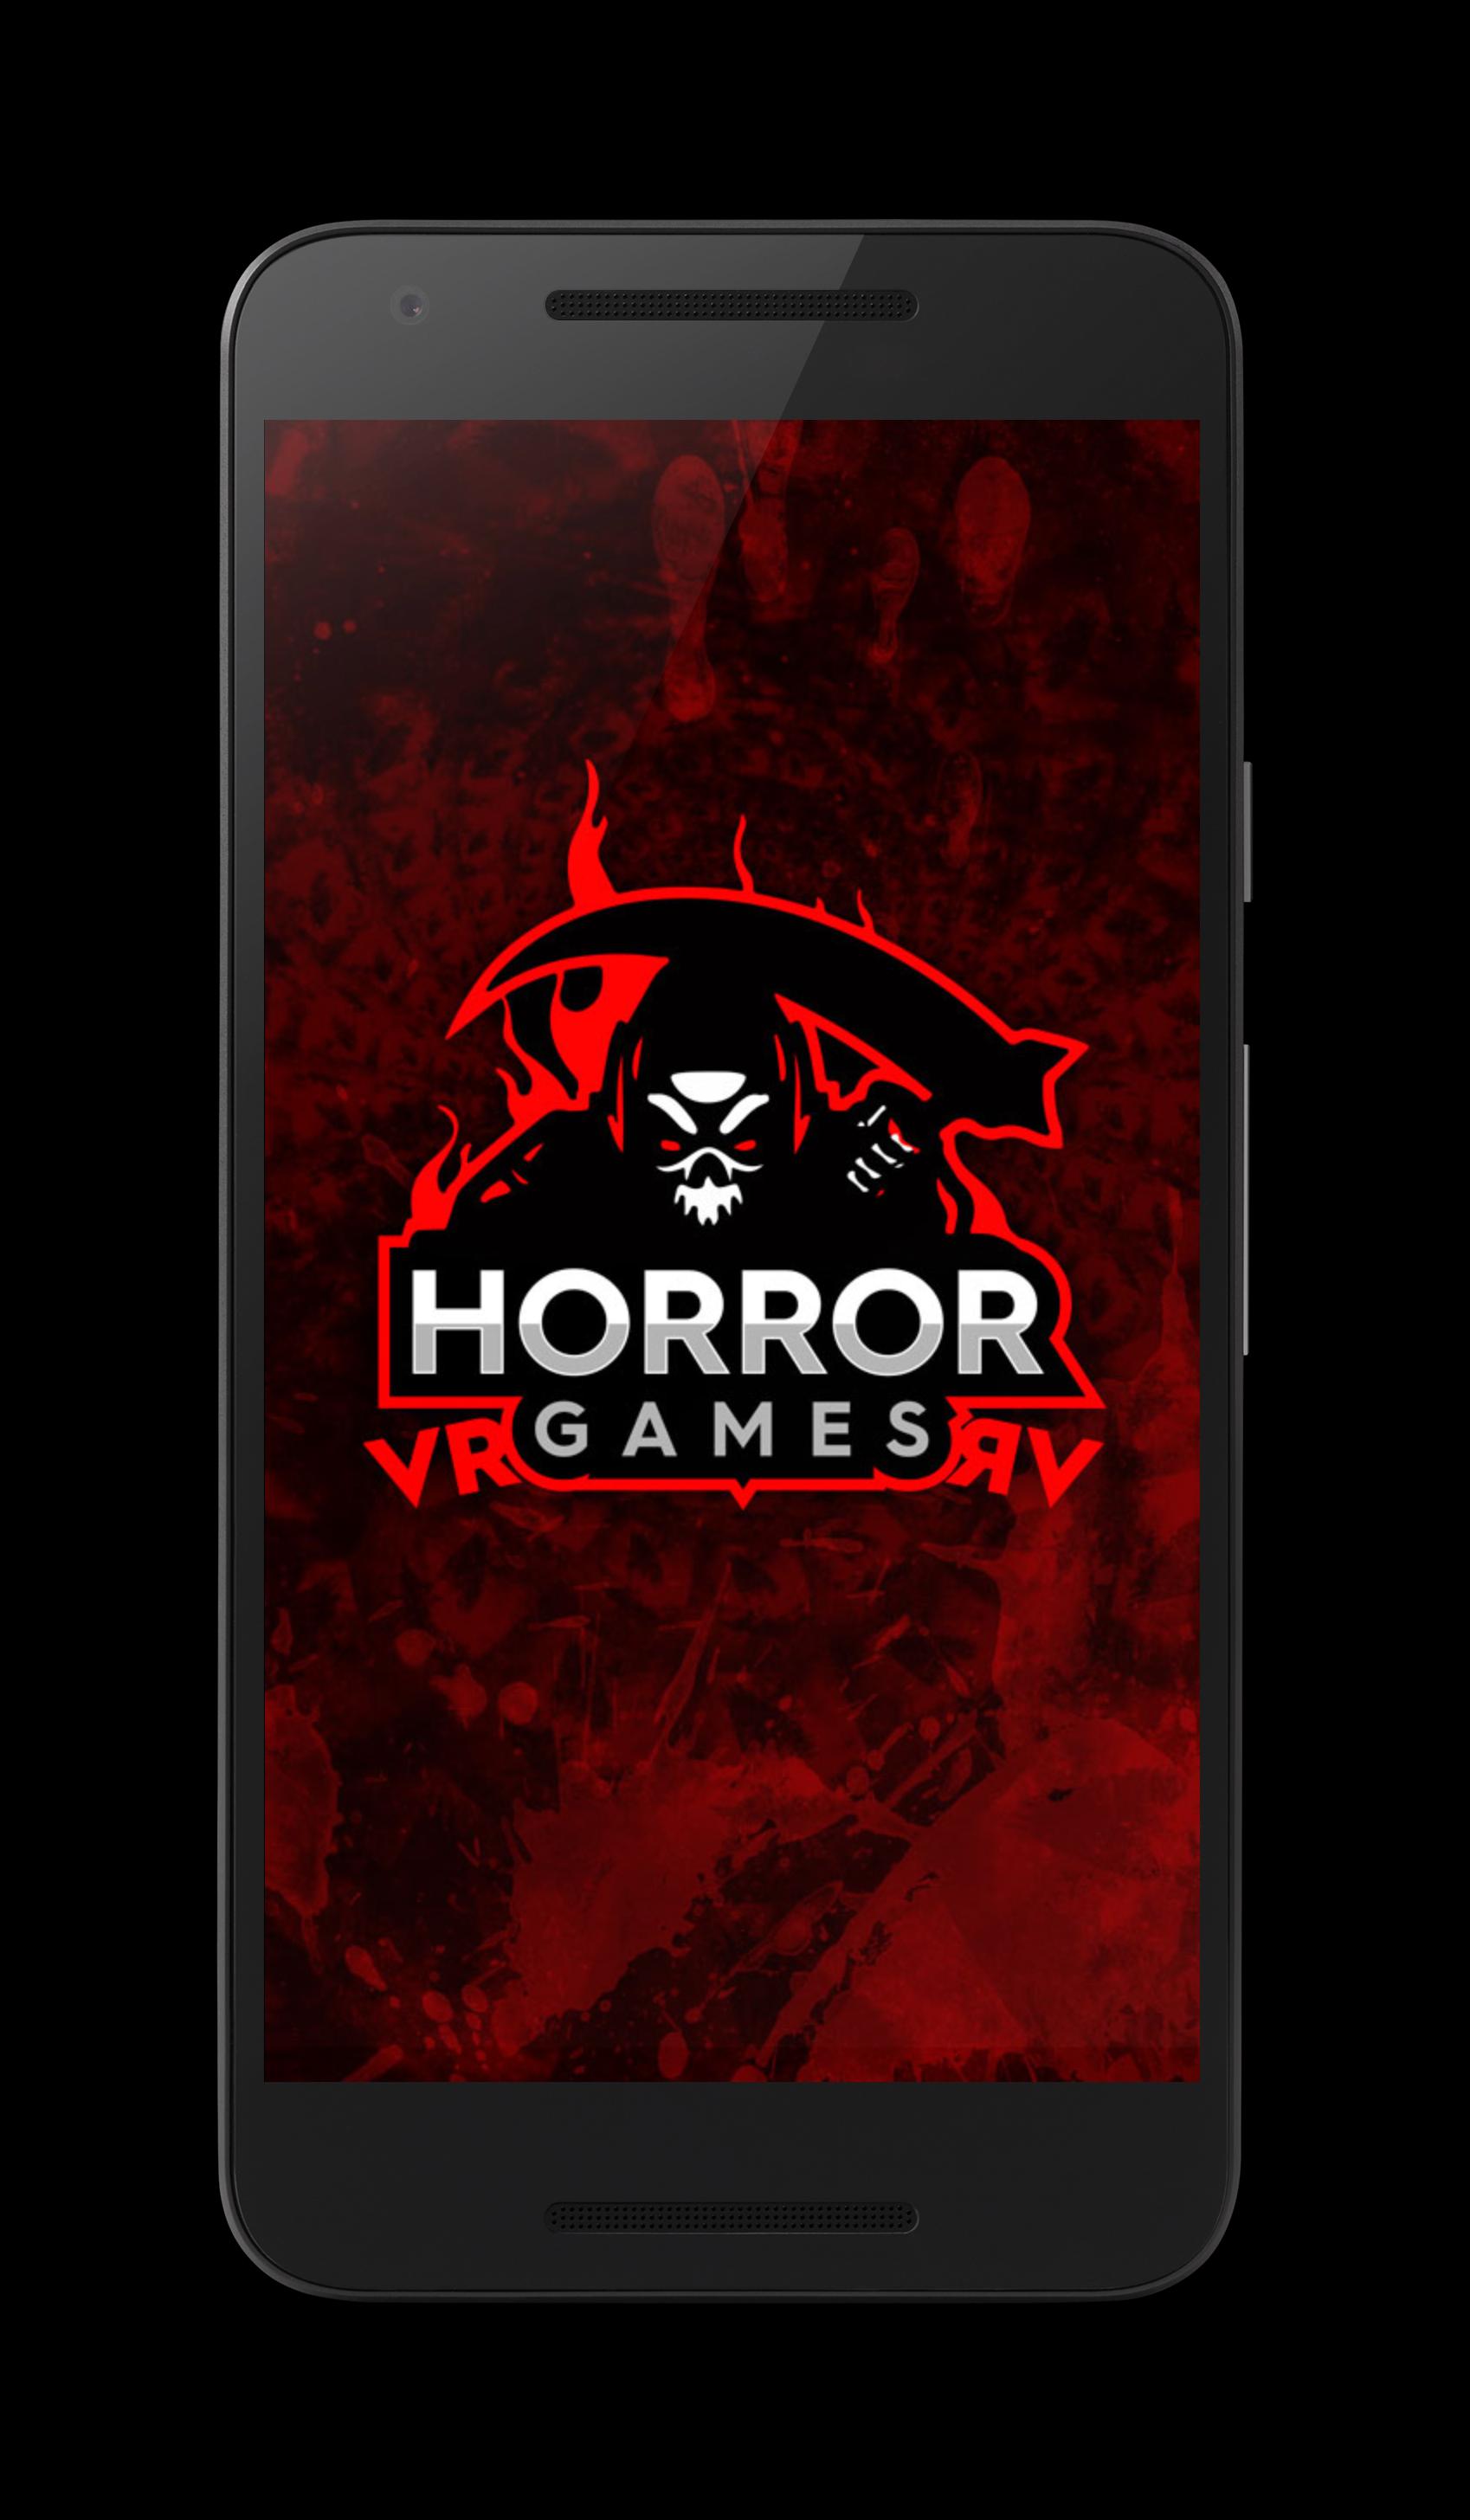 Juegos De Terror Vr 3 0 For Android Apk Download